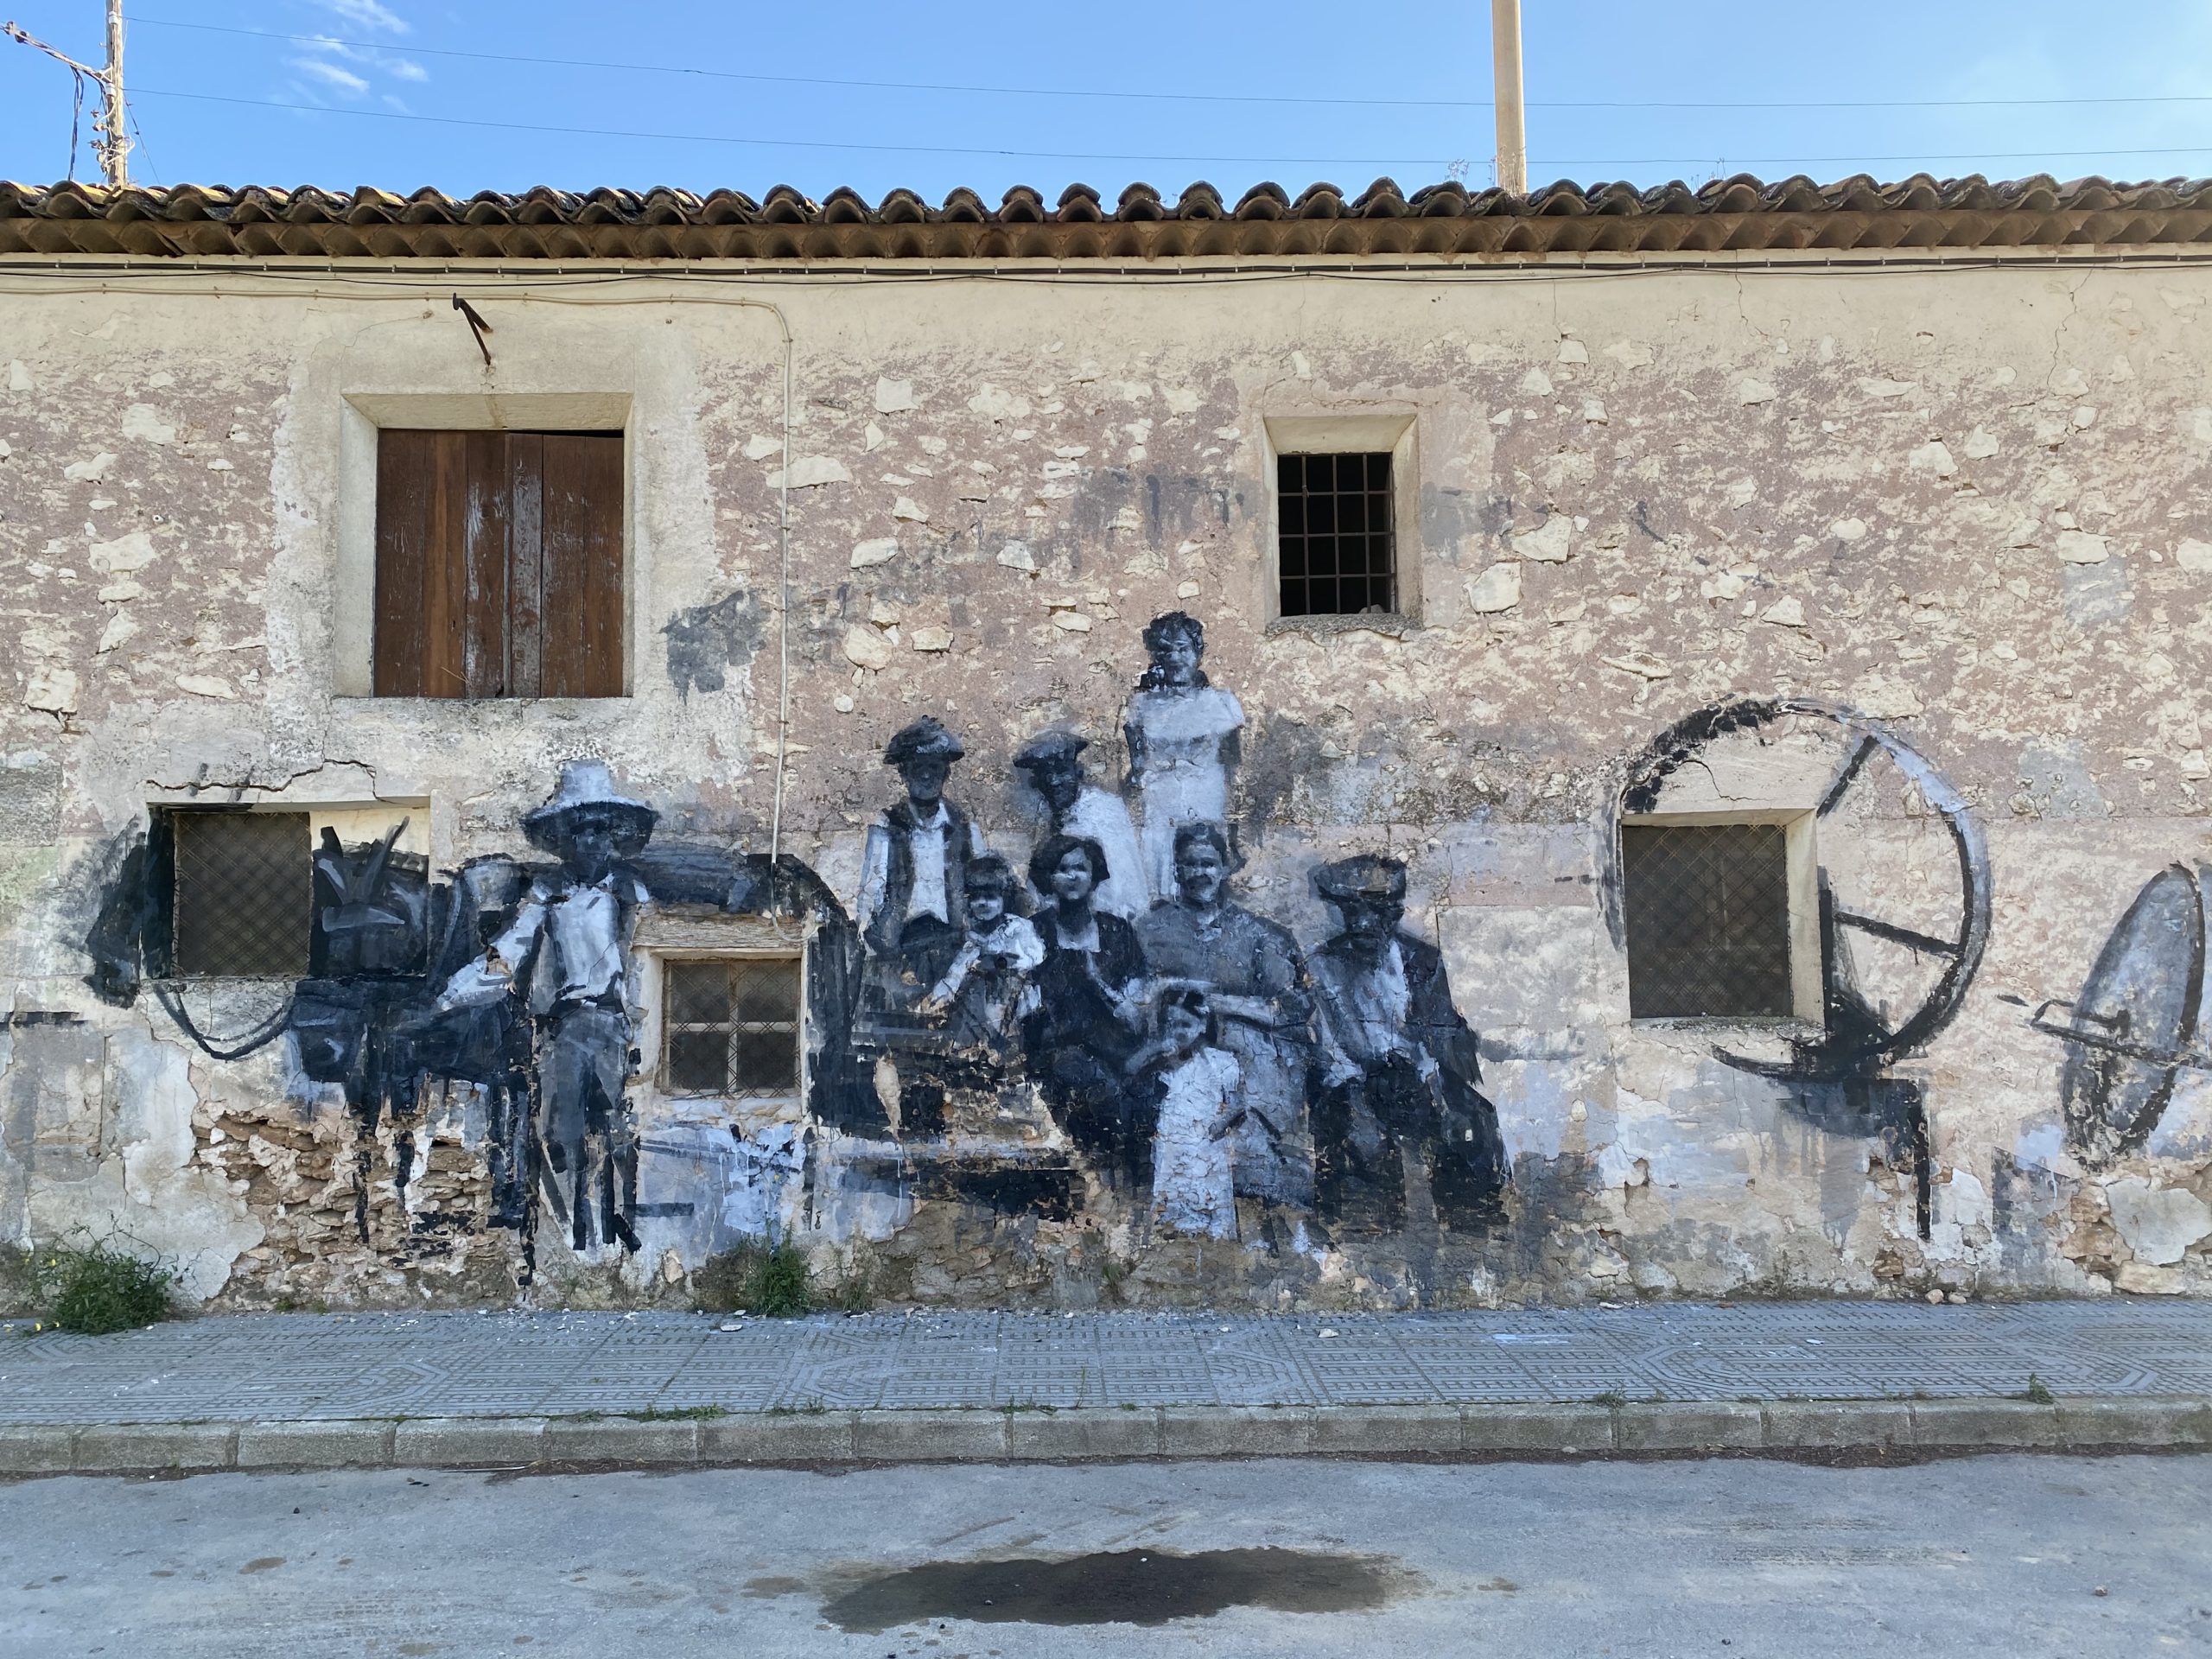 La Alquería rindió culto a San José con un mural que recrea las faenas del campo